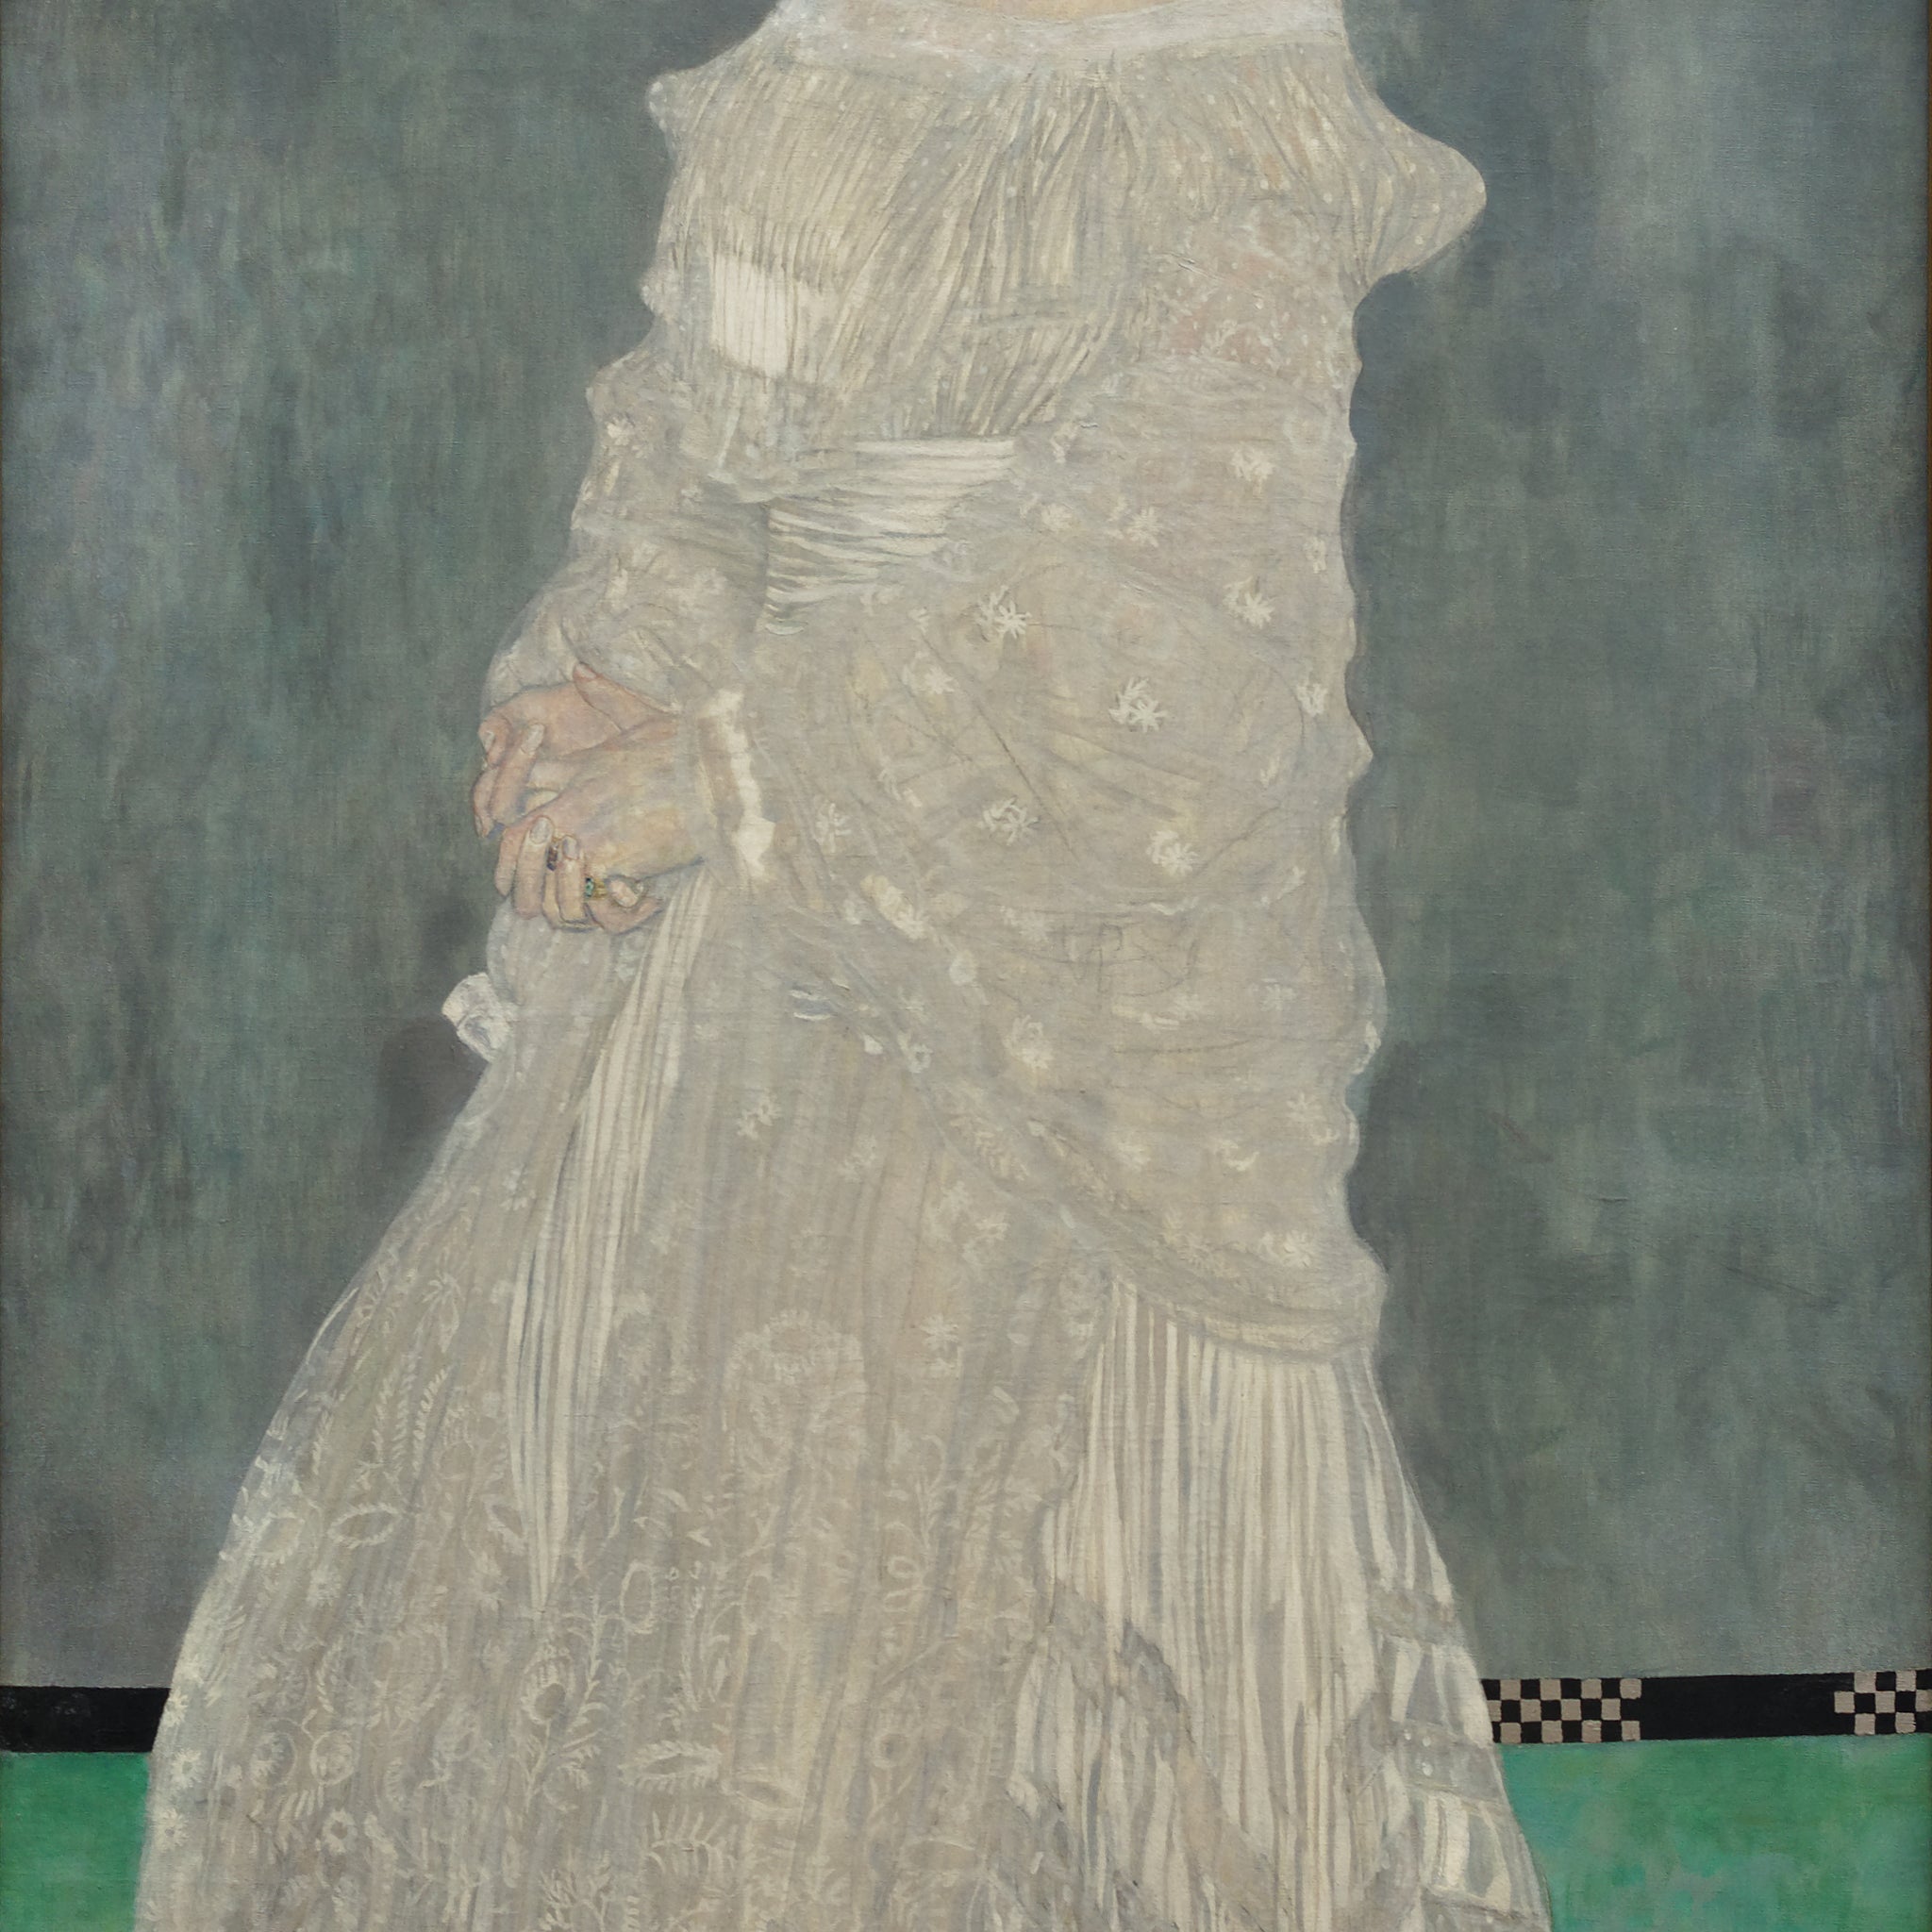 Portrait de Margarethe Stonborough-Wittgenstein - Gustav Klimt